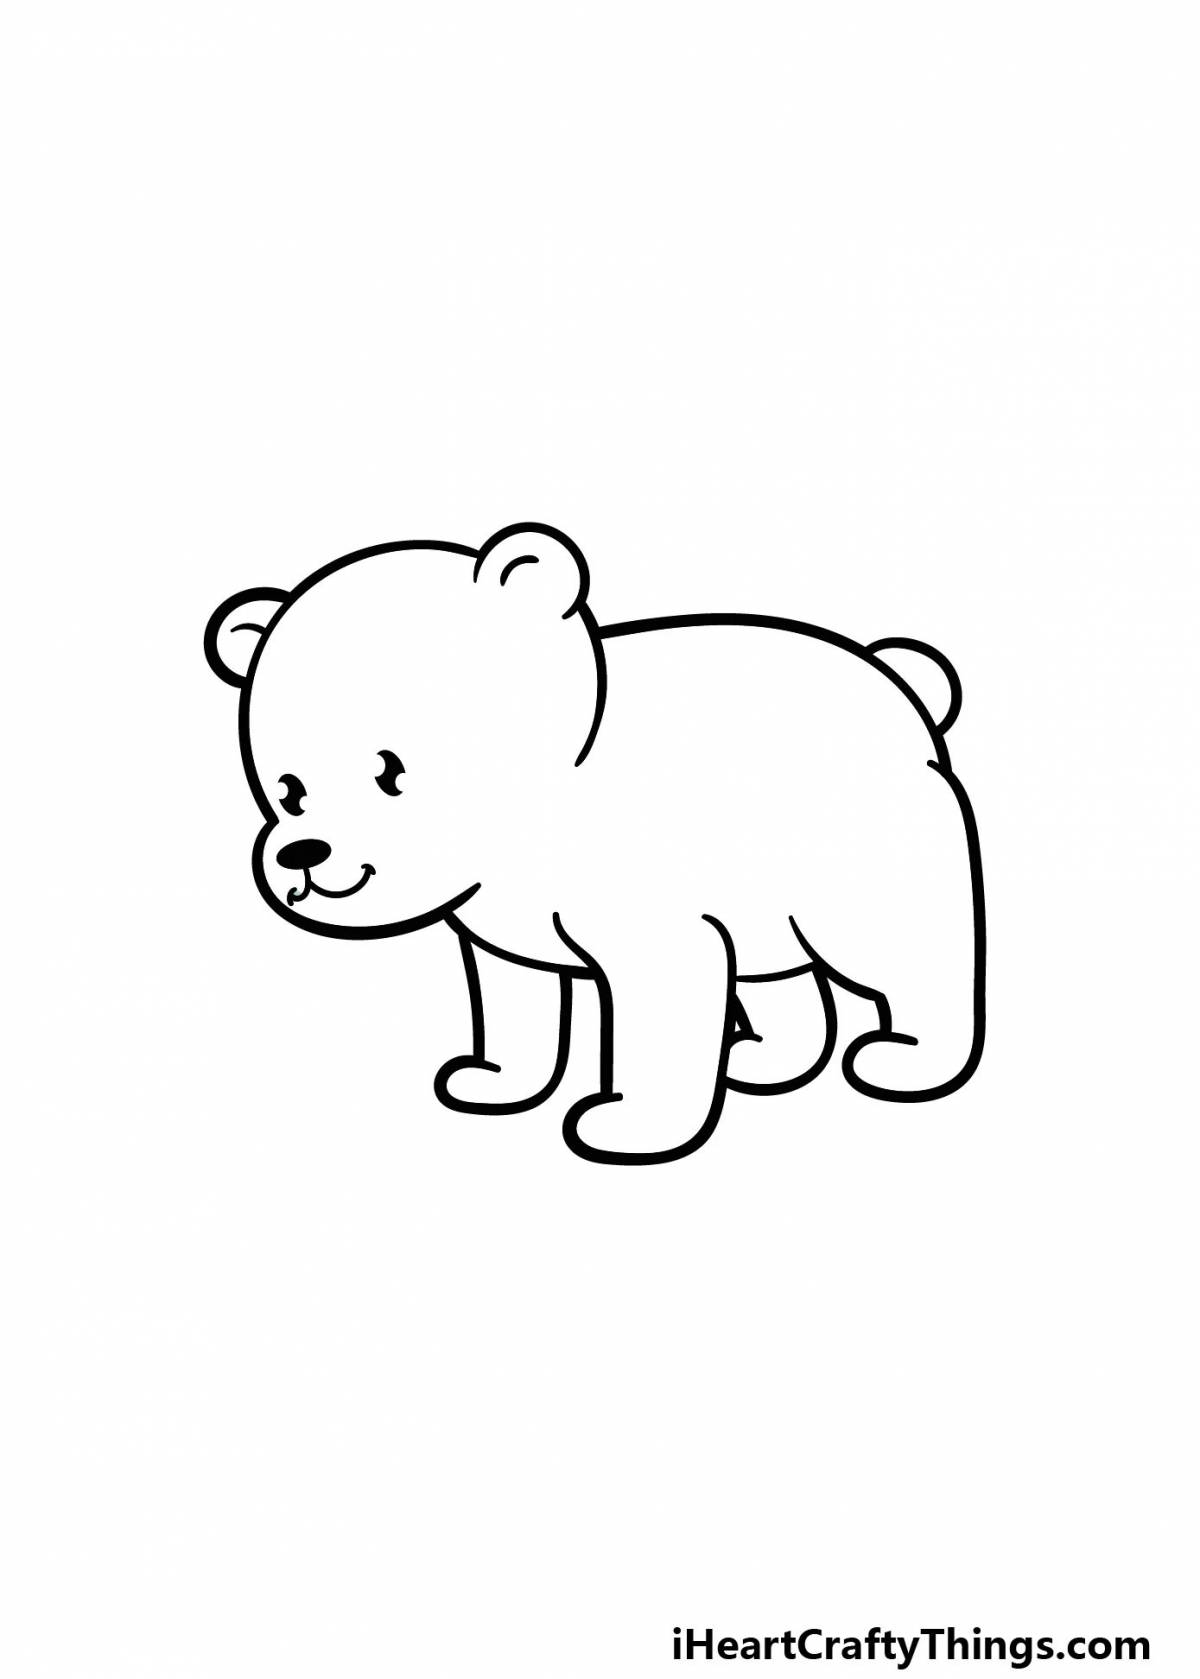 Раскраска веселый белый медведь для детей 3-4 лет